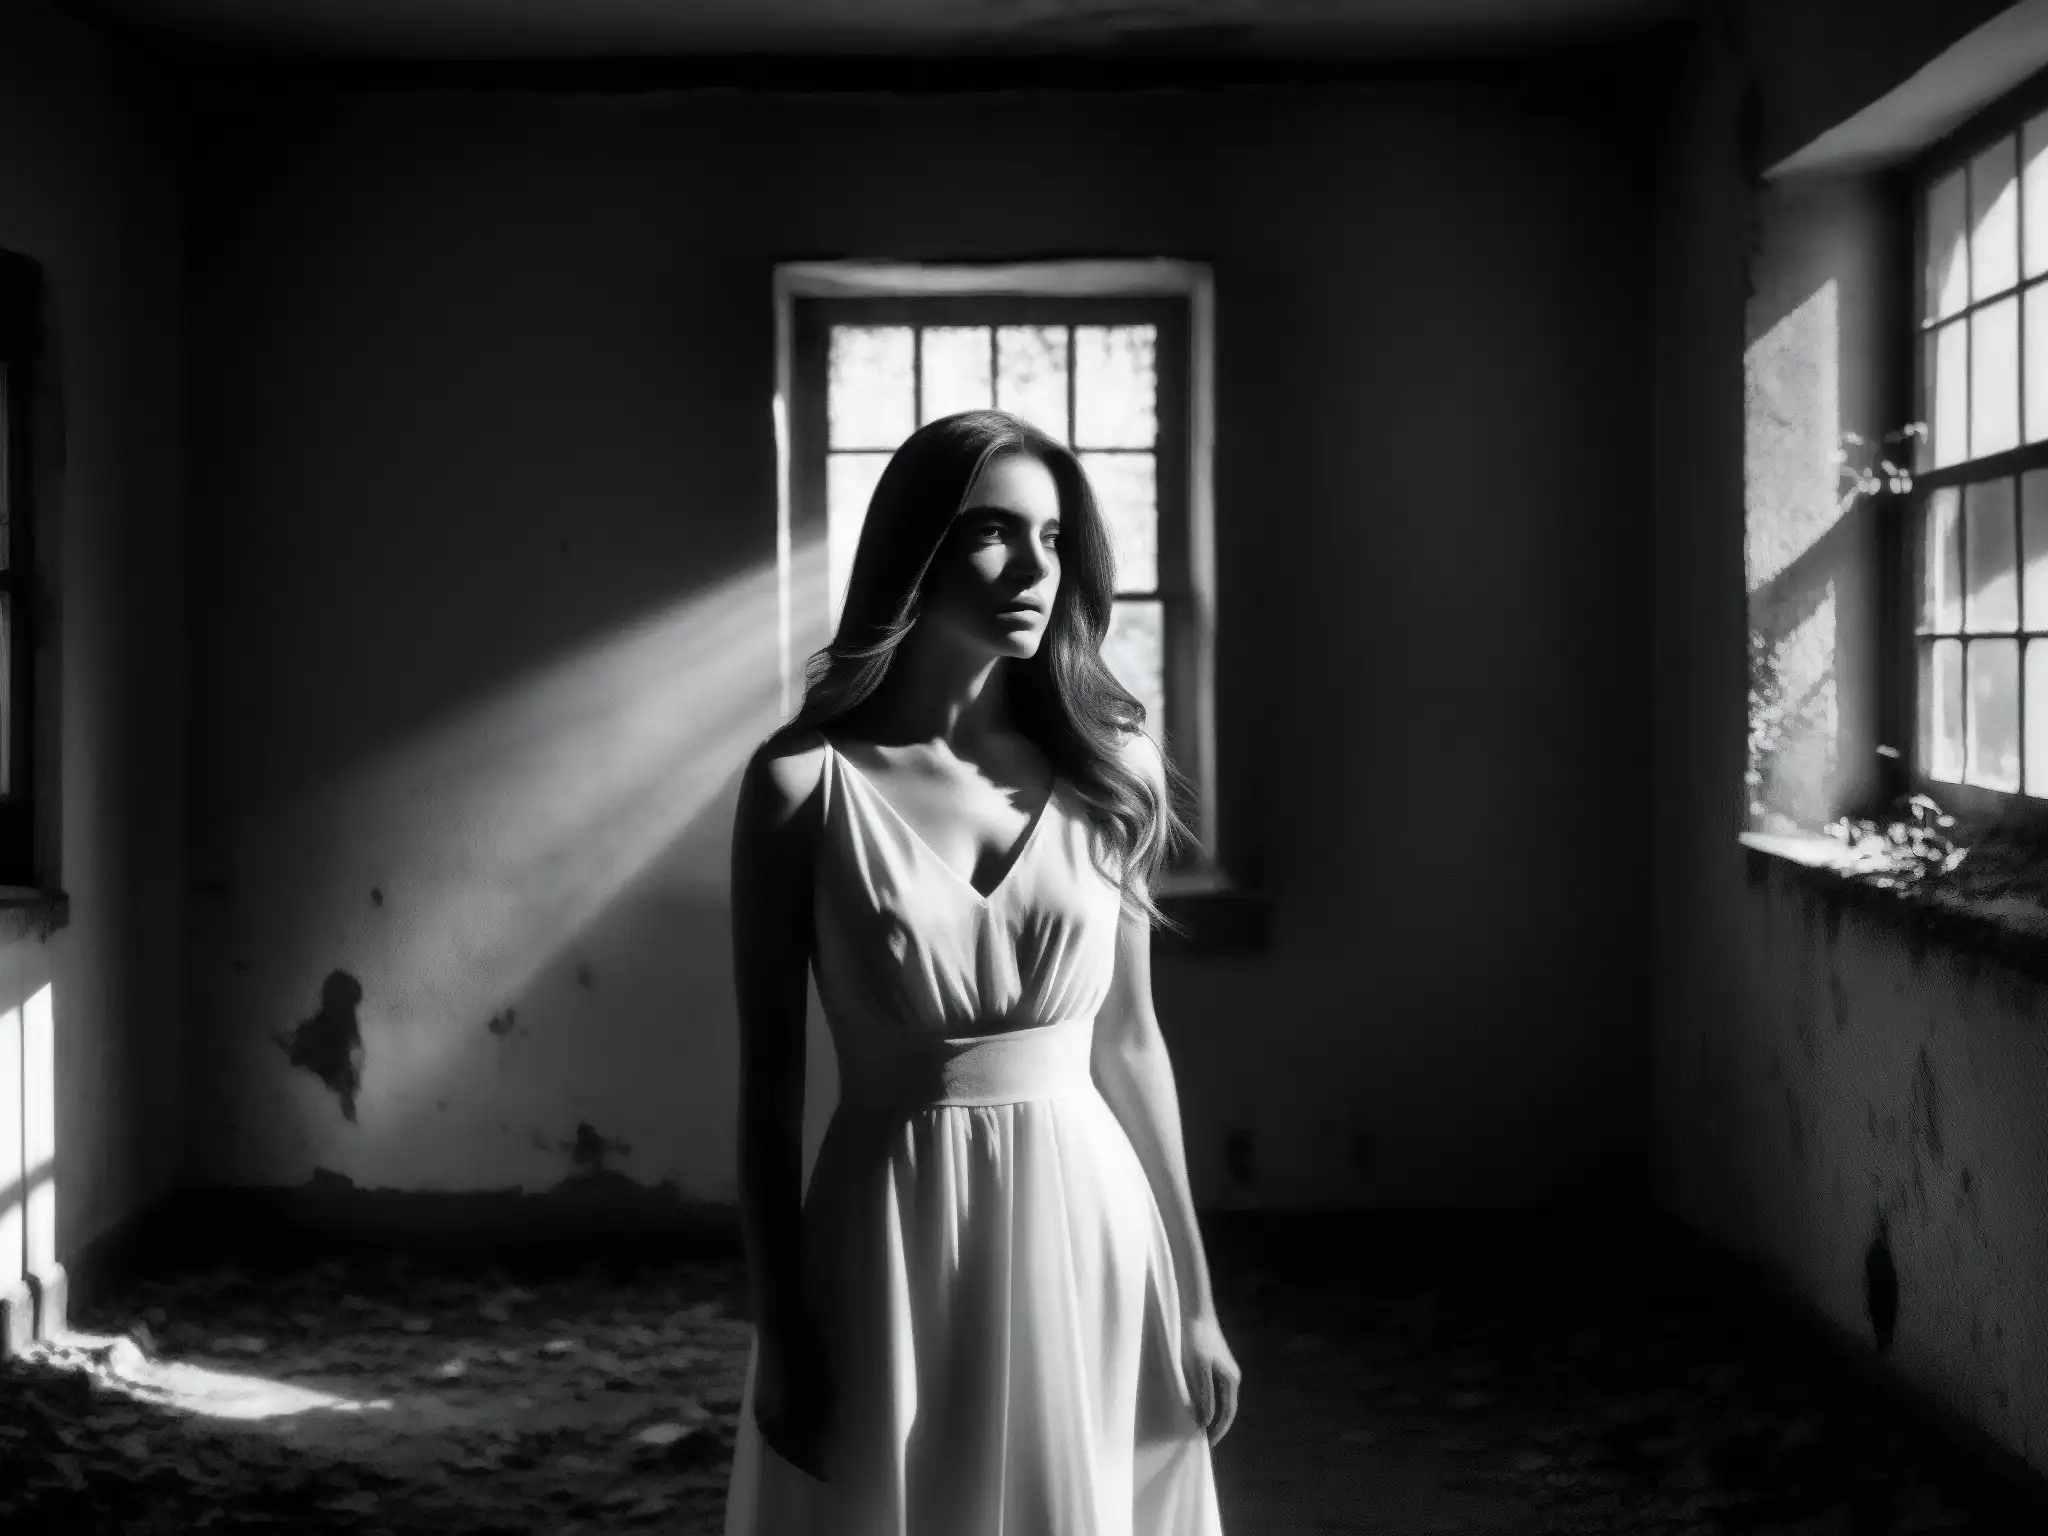 Dama de Blanco mito urbano: Figura misteriosa en vestido blanco en mansión abandonada con enredaderas, creando una atmósfera intrigante y misteriosa